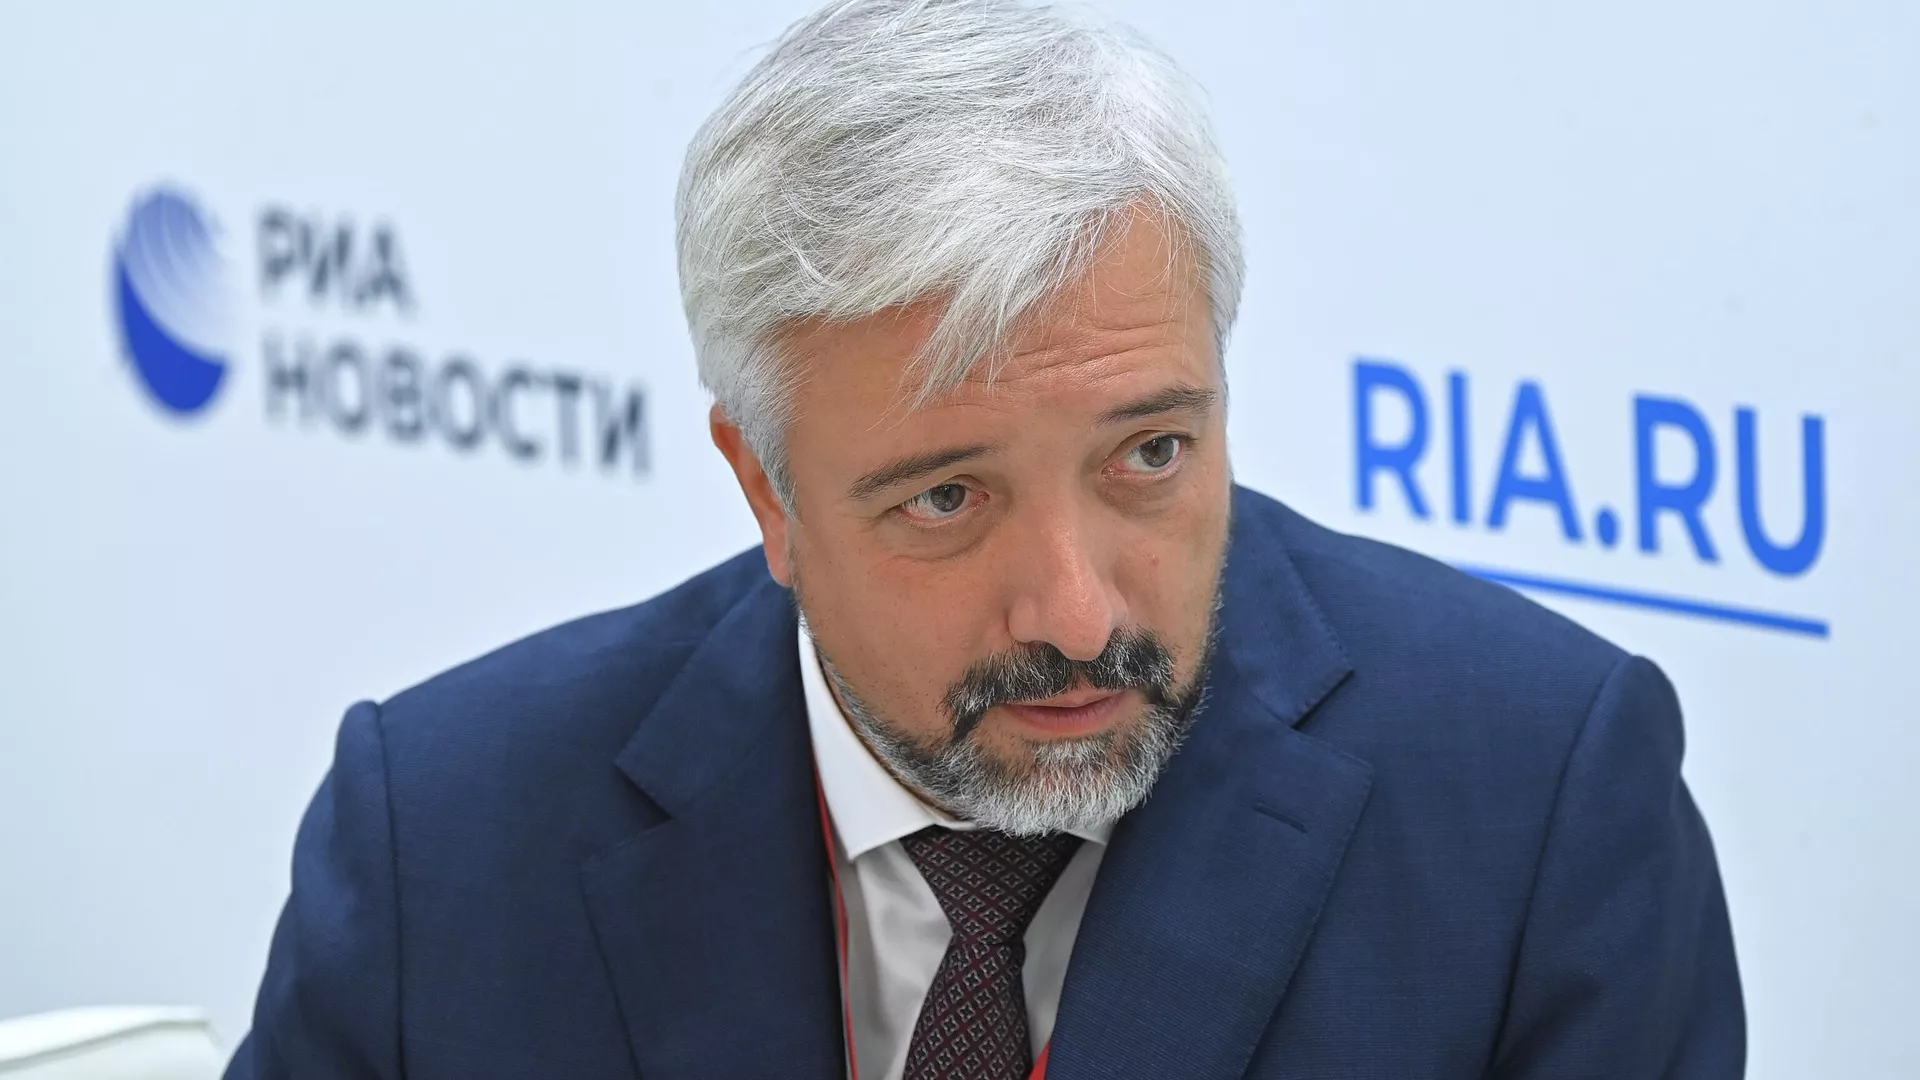 Россотрудничество отказалось работать с новым министром информации Казахстана Умаровым